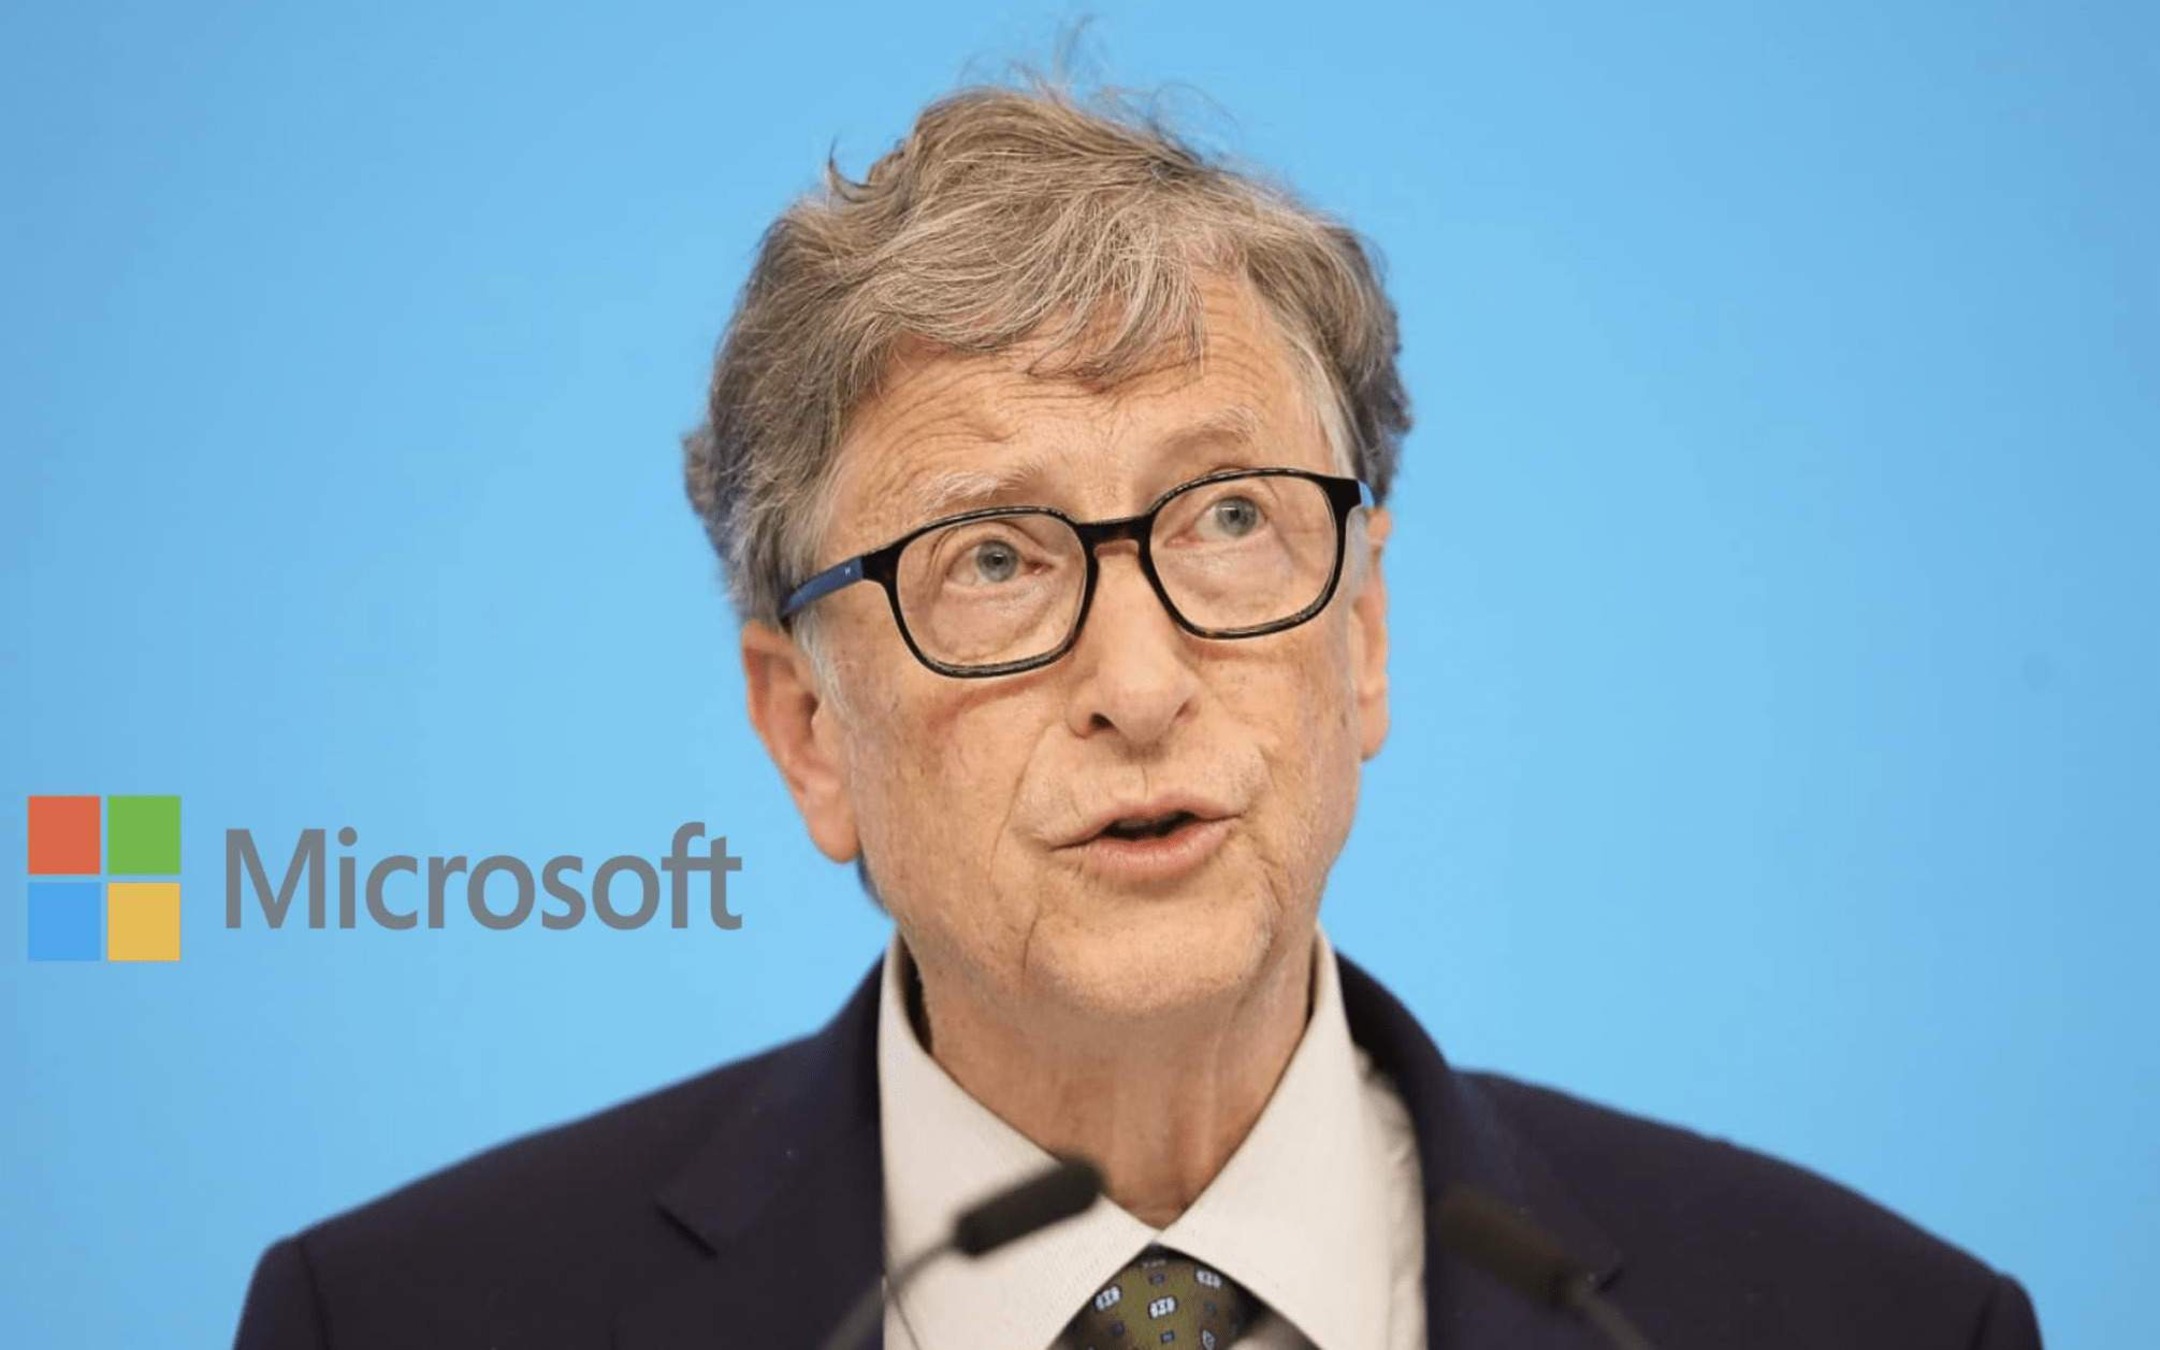 Microsoft co-founder Bill Gates ideas